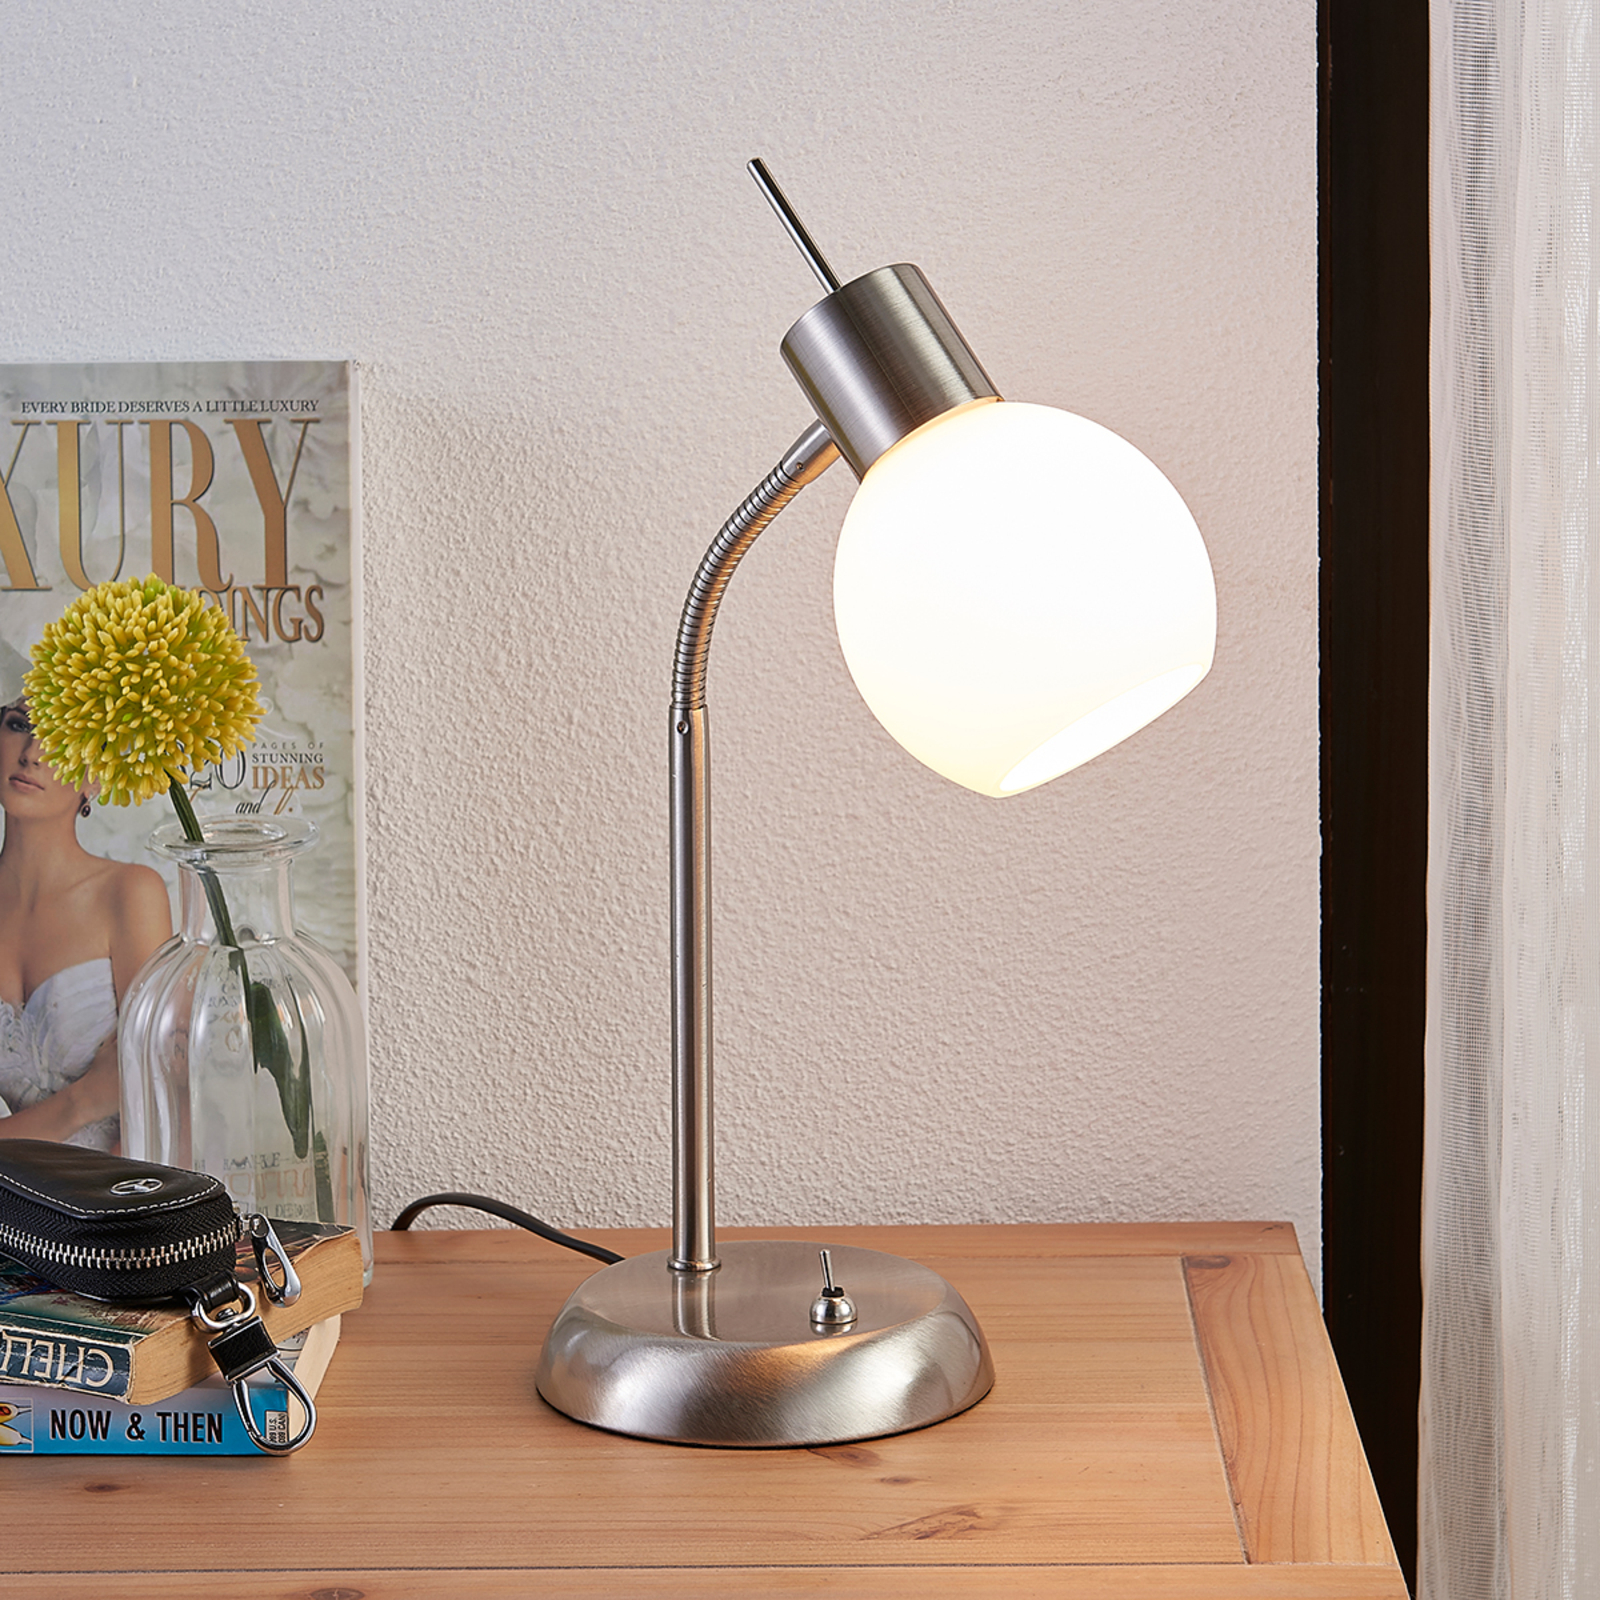 Lámpara de mesa LED Manon con pantalla en blanco